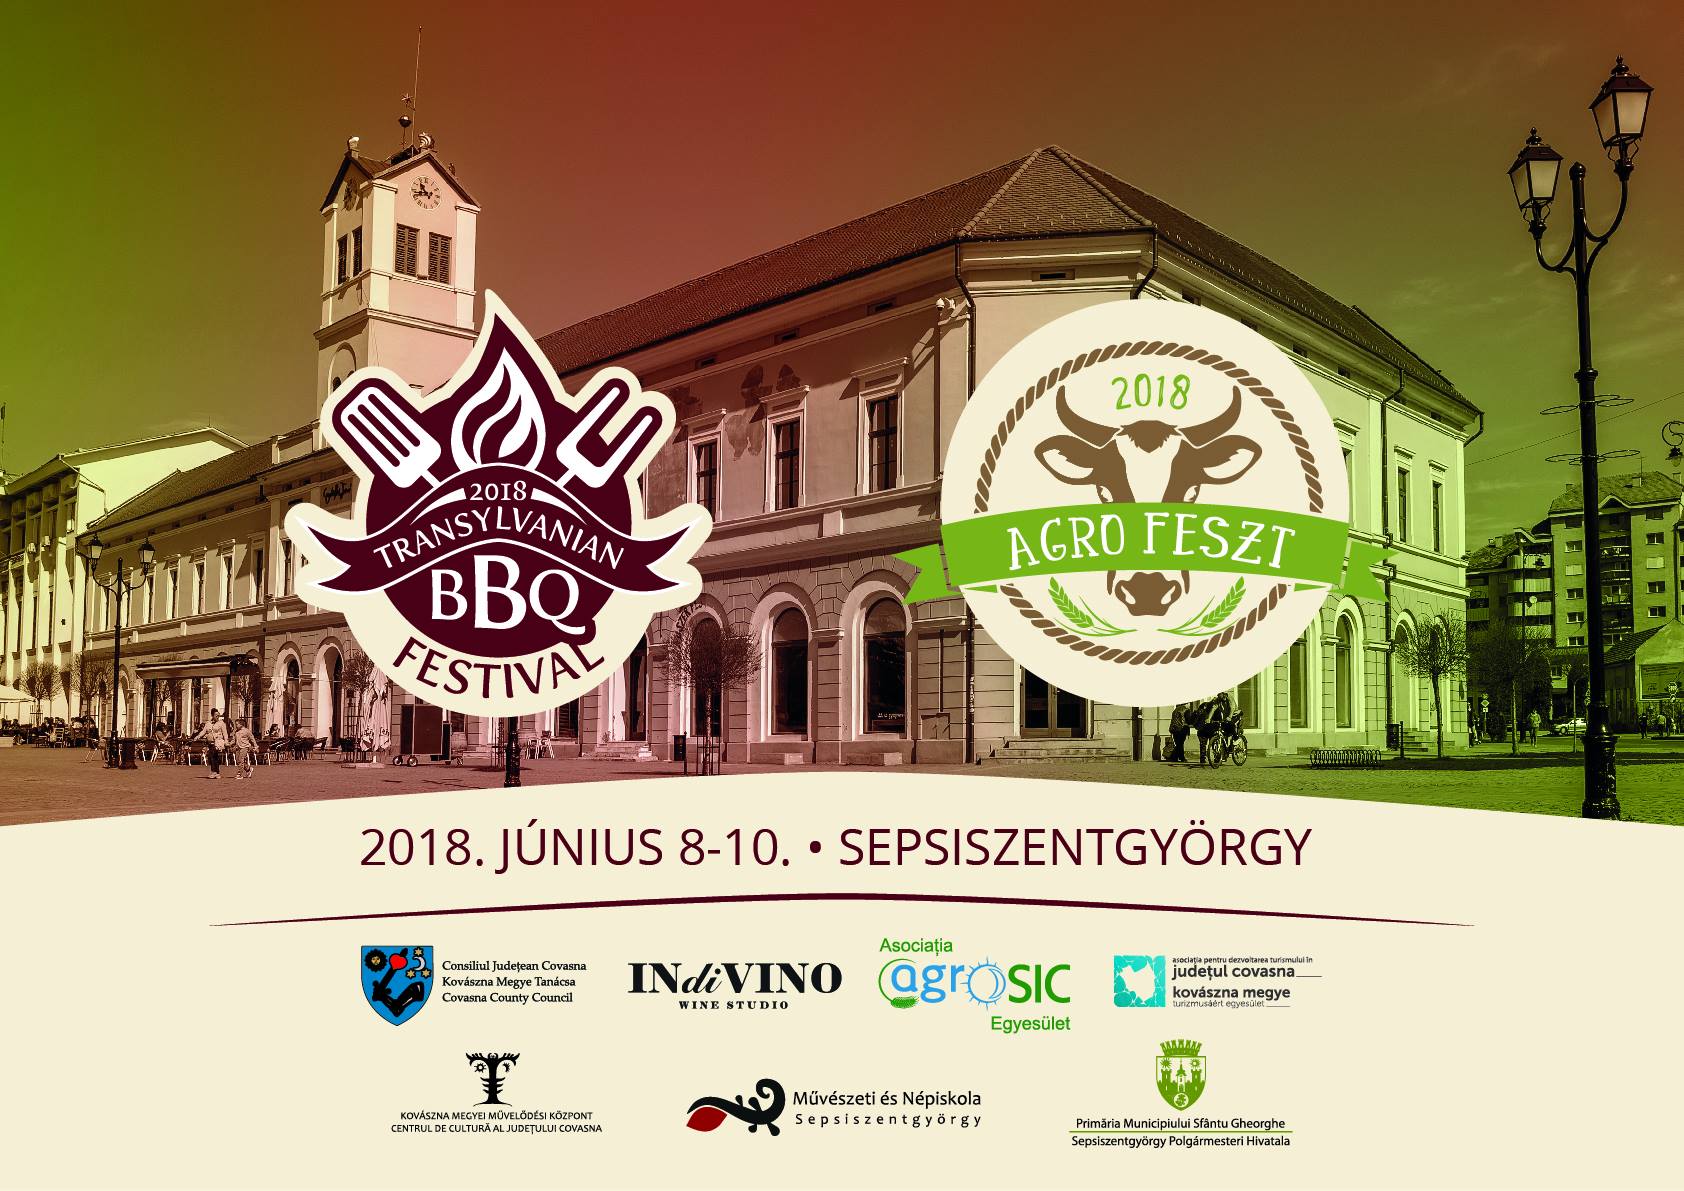 Primul Transylvanian BBQ Festival şi Agrofest